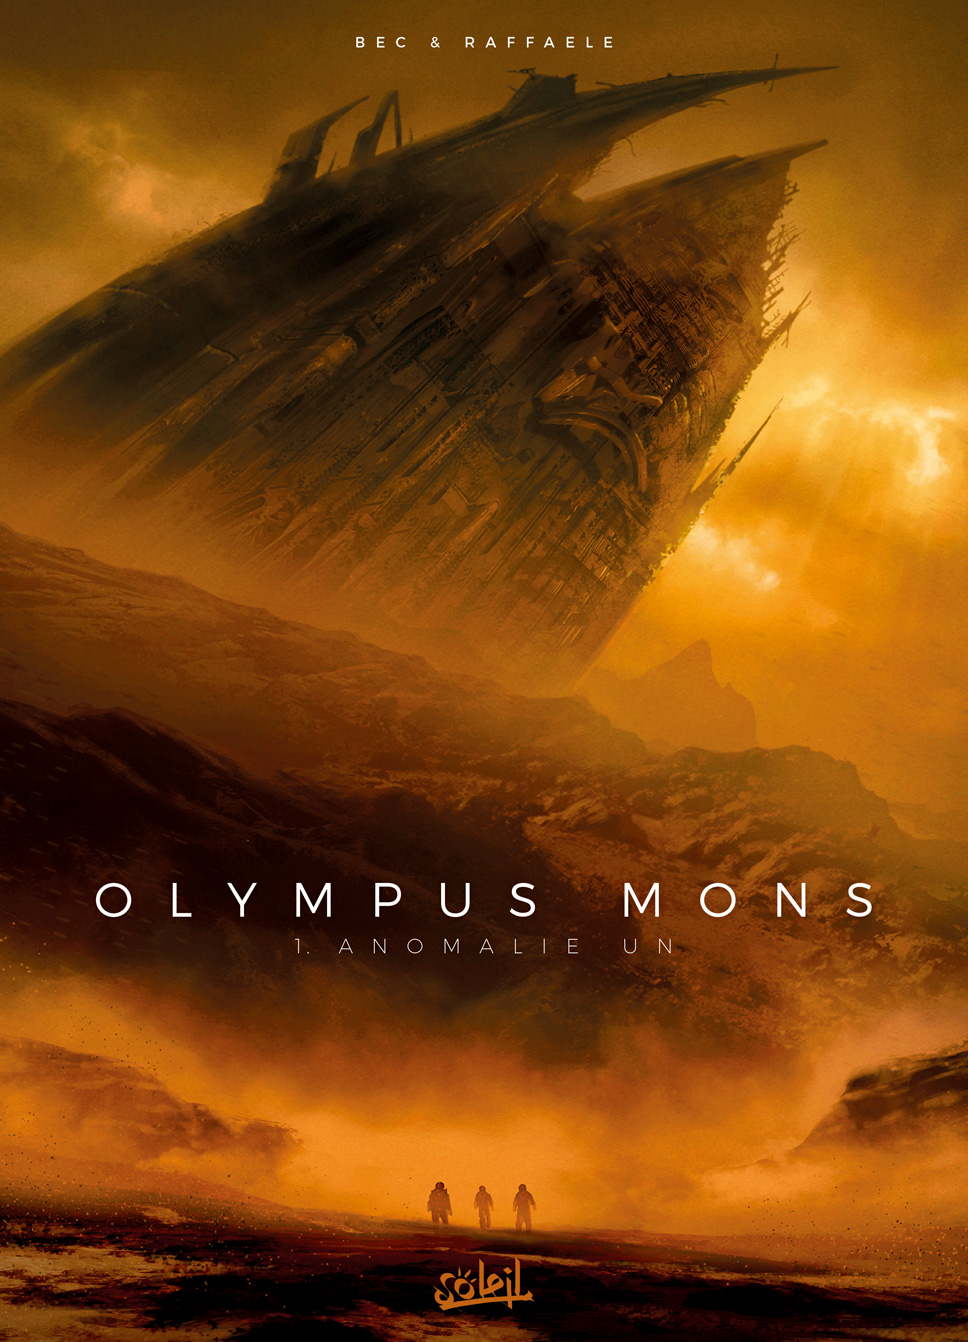 Couverture BD Olympus Mons T1, Anomalie Un